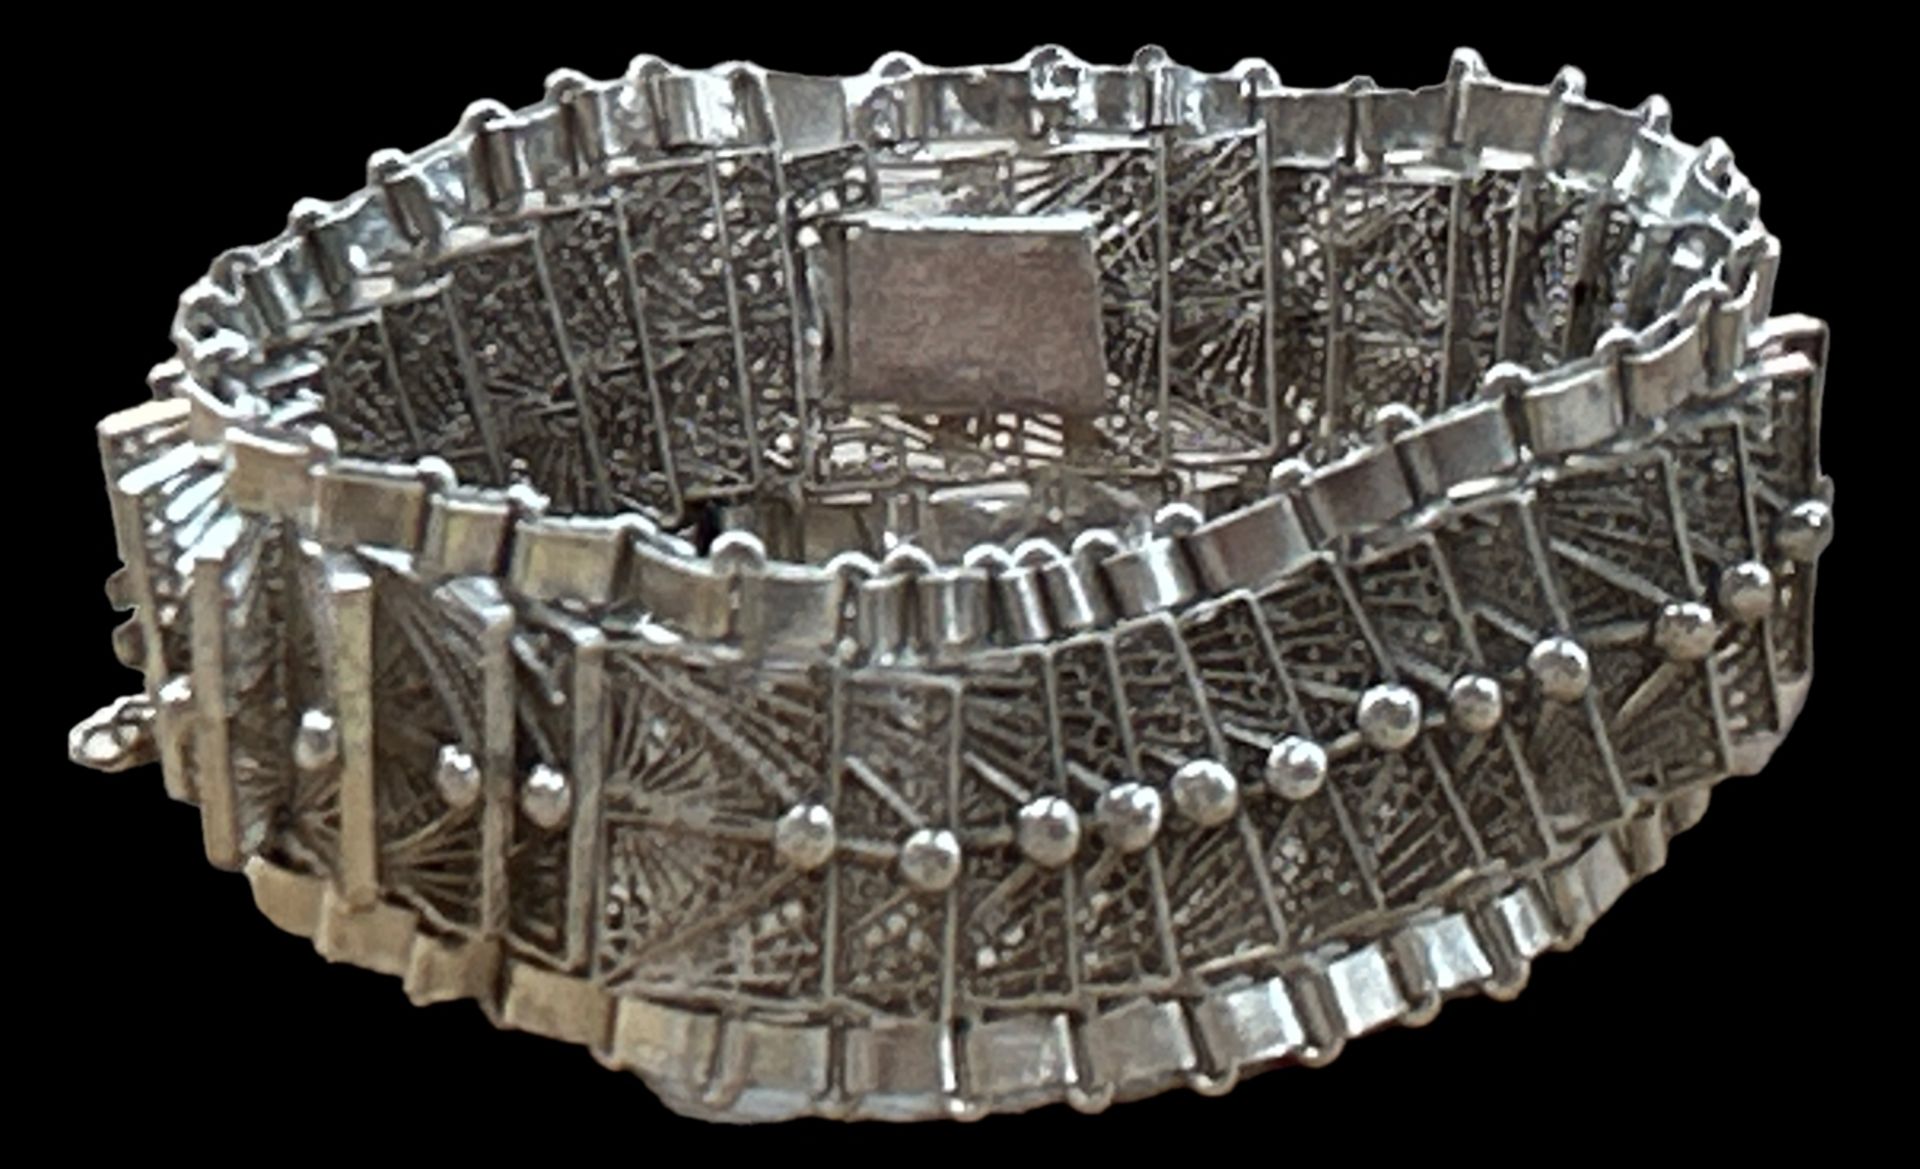 Silber-Armband mit Sicherheitskette, L-ca. 19 cm, 43,4 gr., (geprüft) - Bild 3 aus 3